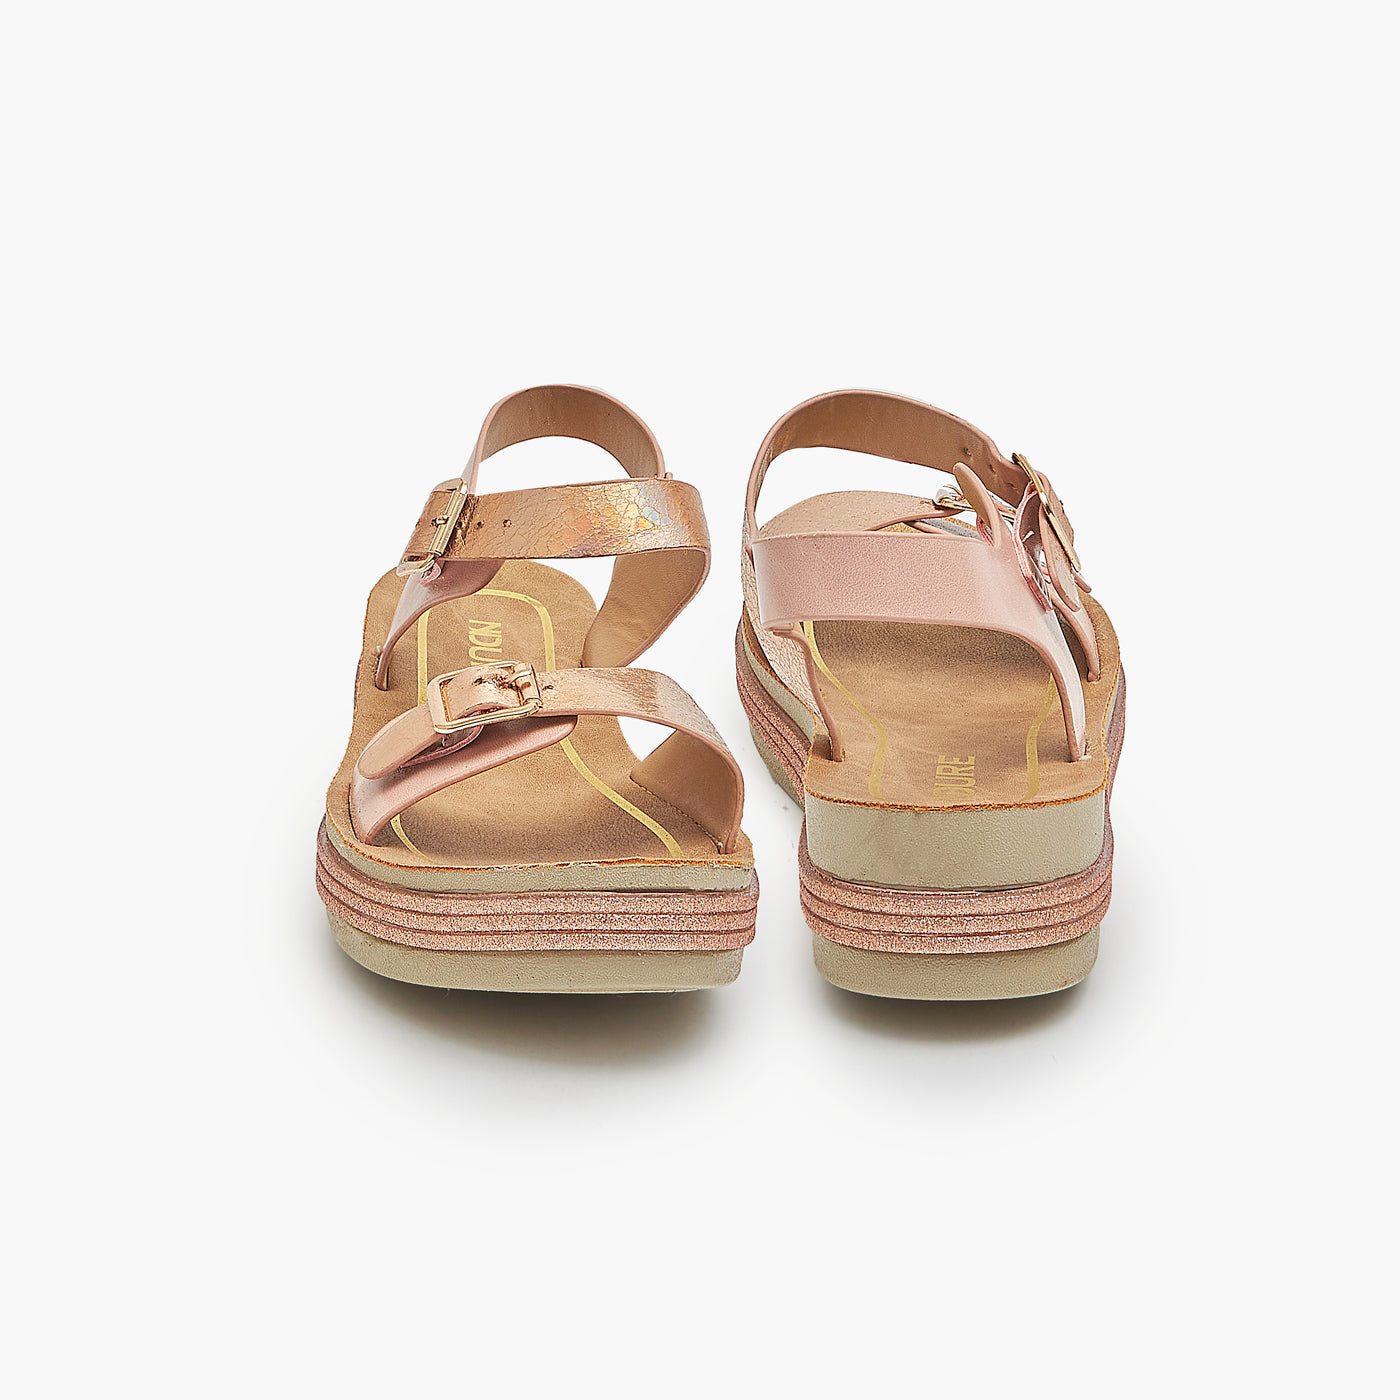 Platform Sandals for Girls